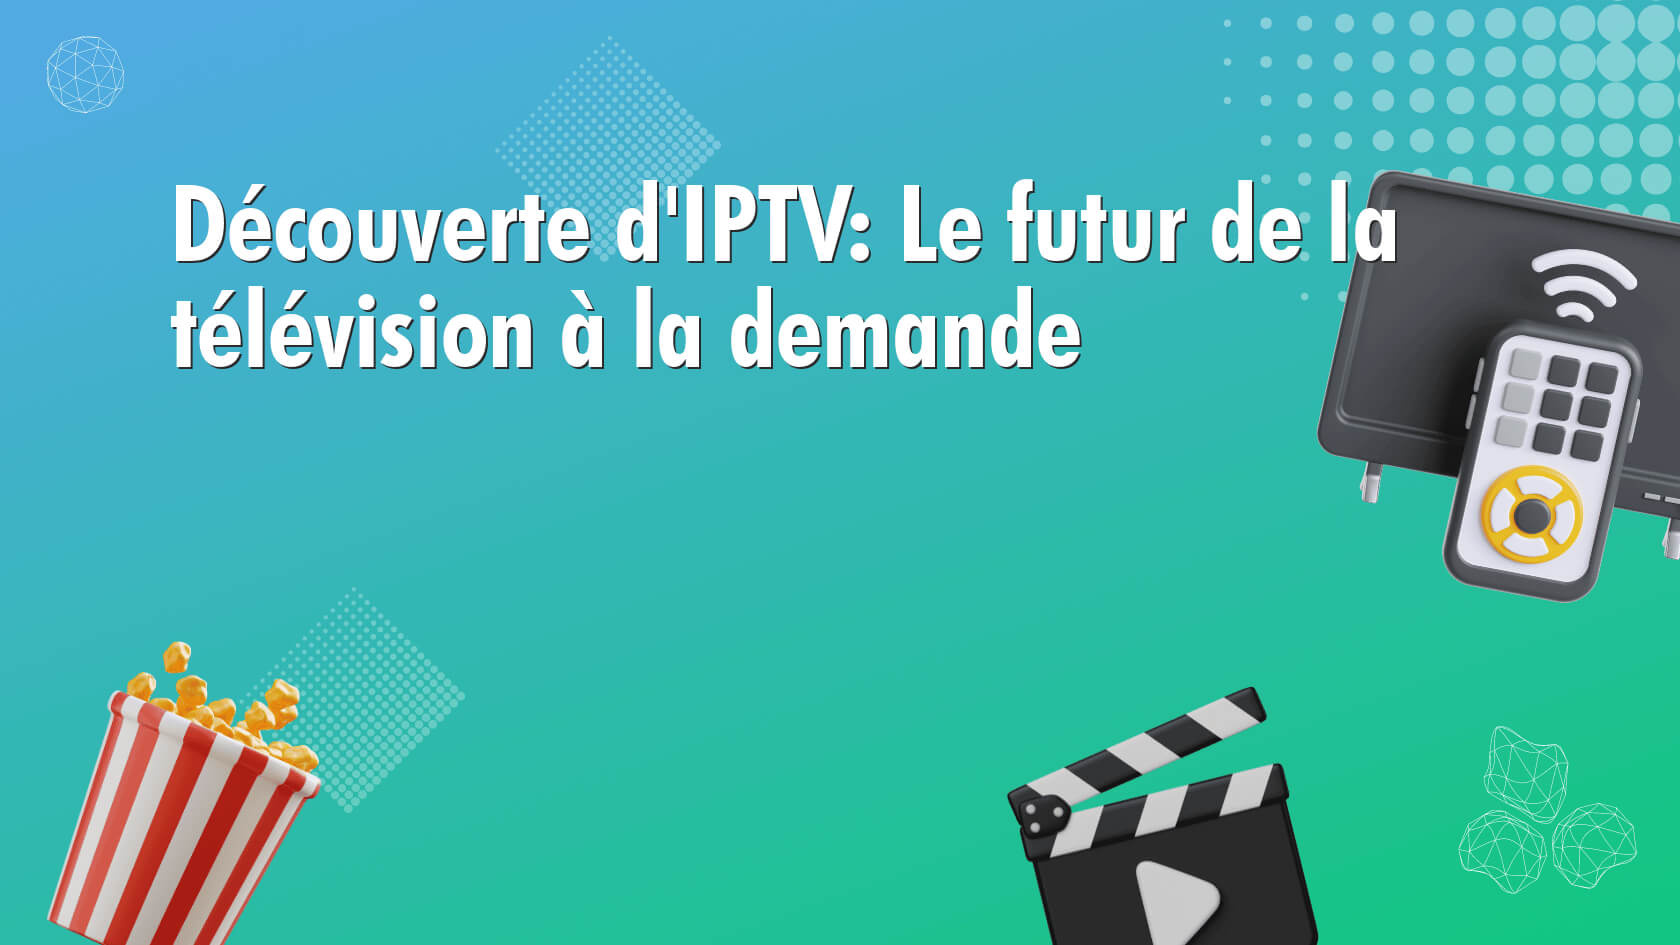 Découverte d’IPTV: Le futur de la télévision à la demande